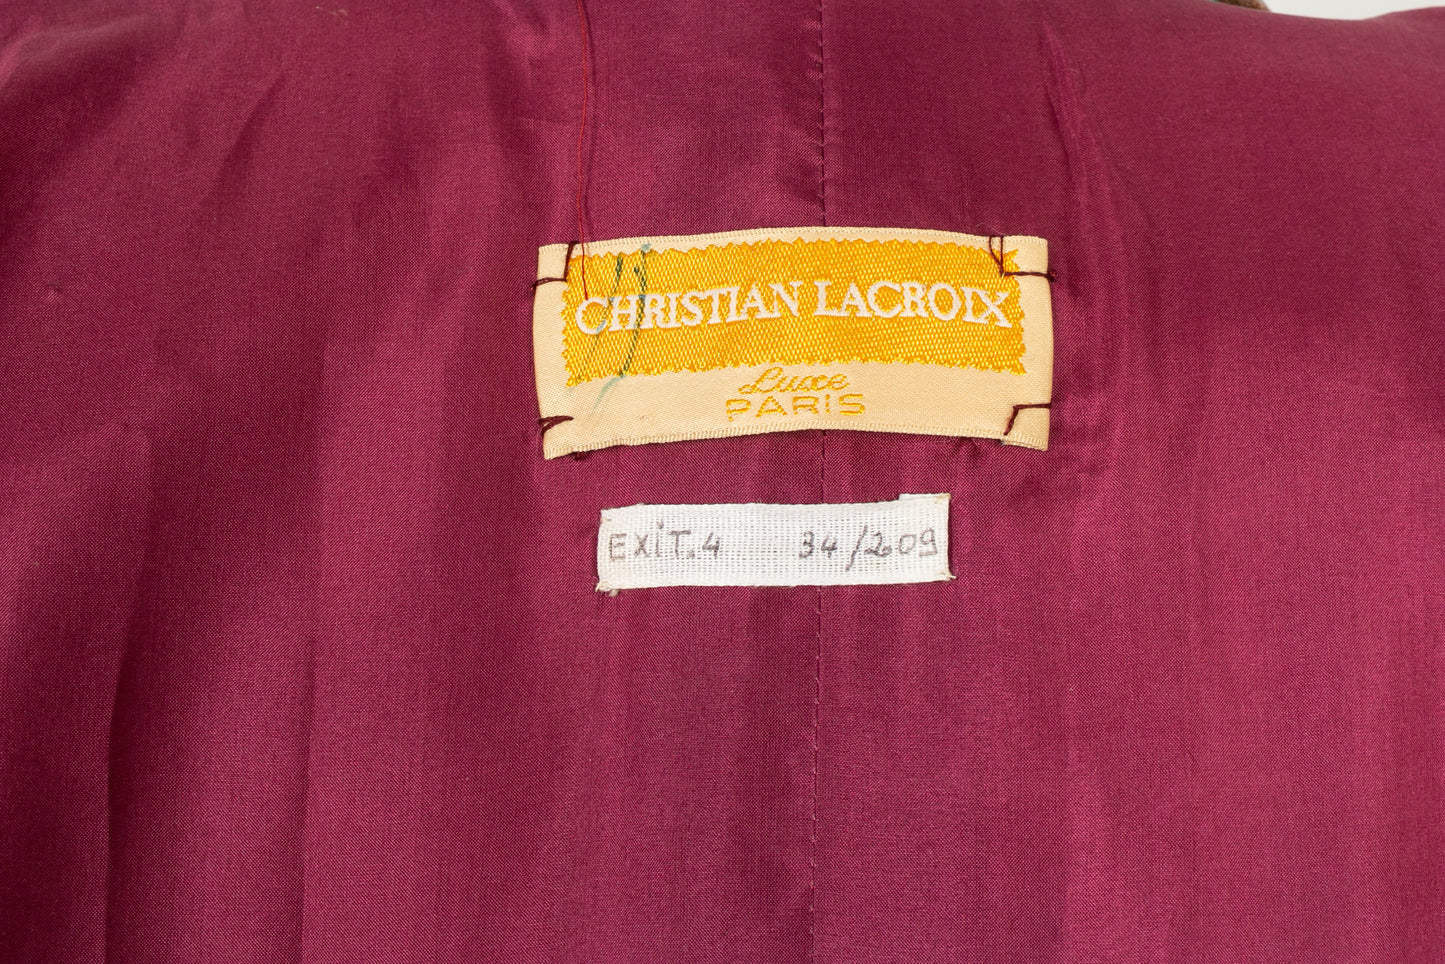 Manteau Christian Lacroix Haute Couture 1988/89